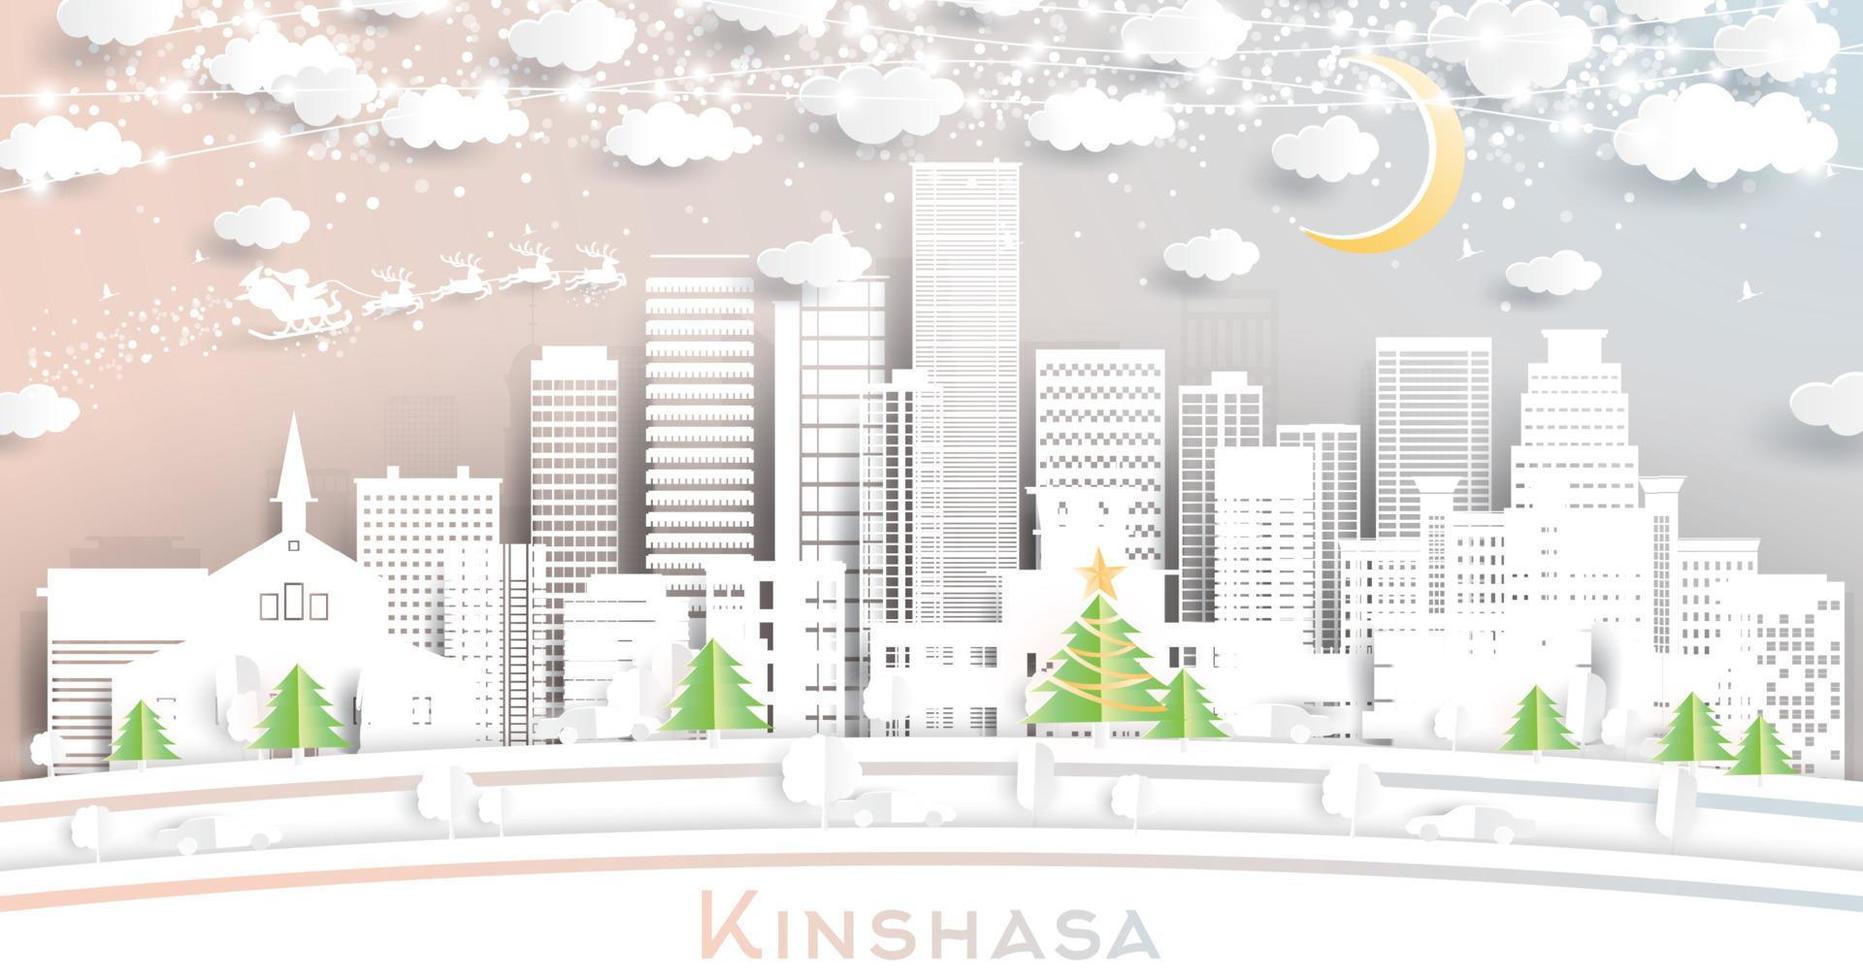 horizonte de la ciudad de kinshasa congo en estilo de corte de papel con copos de nieve, luna y guirnalda de neón. vector